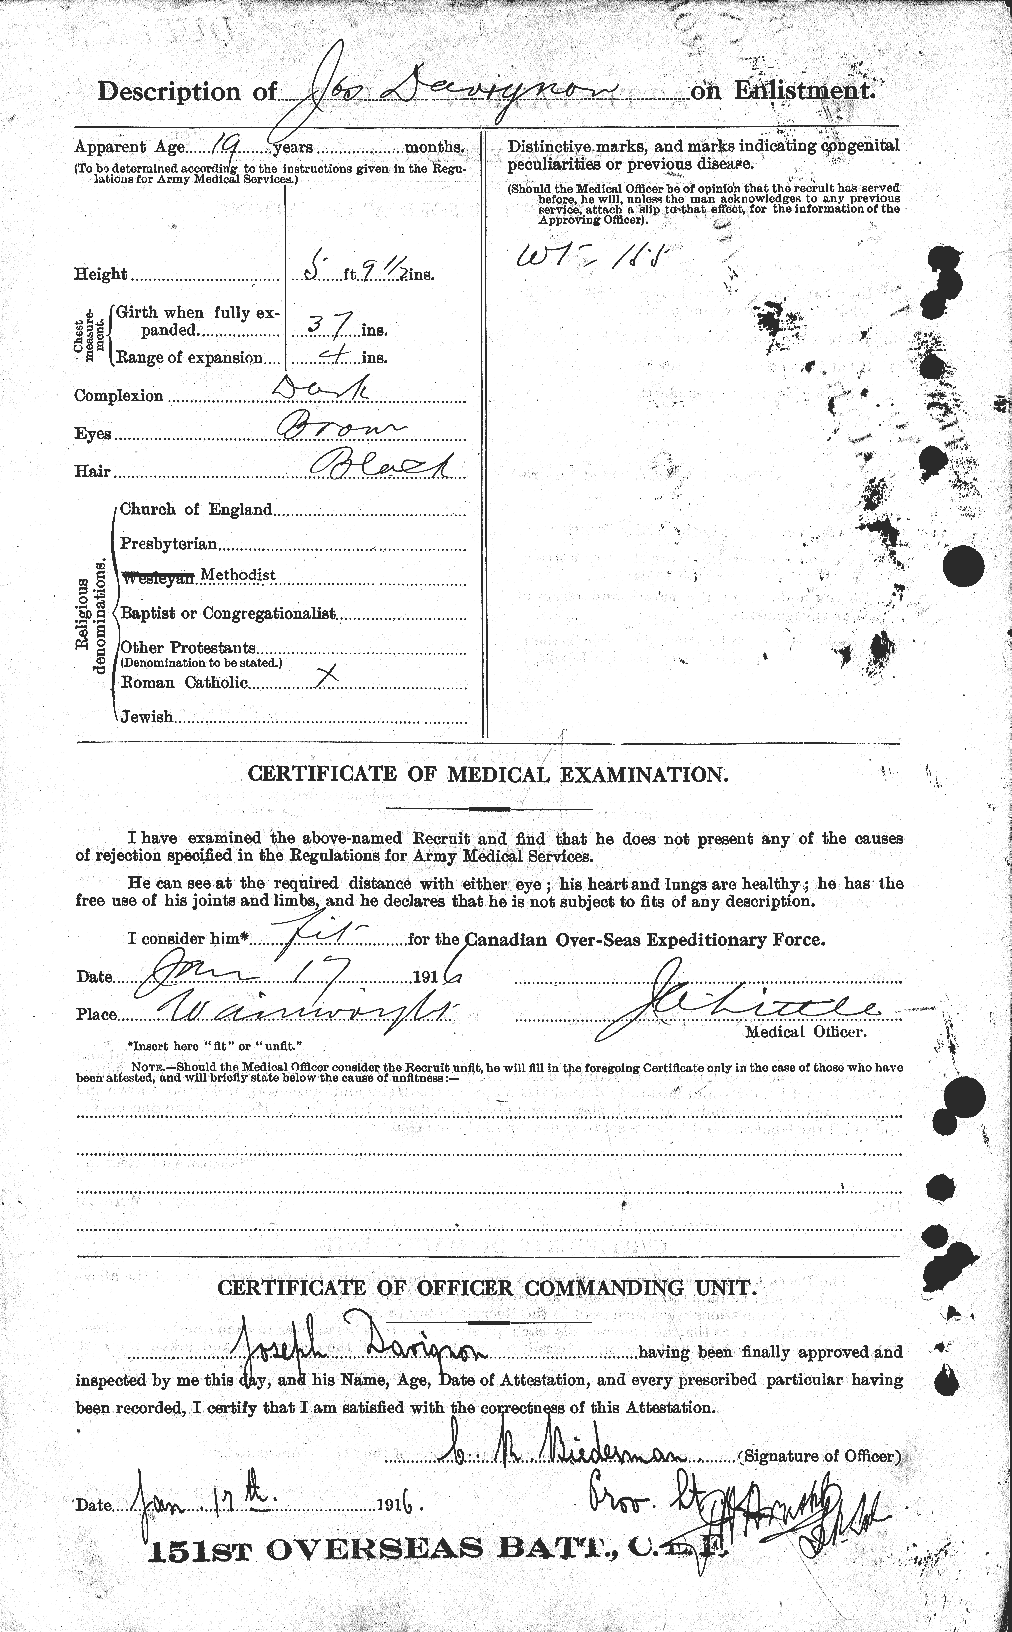 Dossiers du Personnel de la Première Guerre mondiale - CEC 282159b